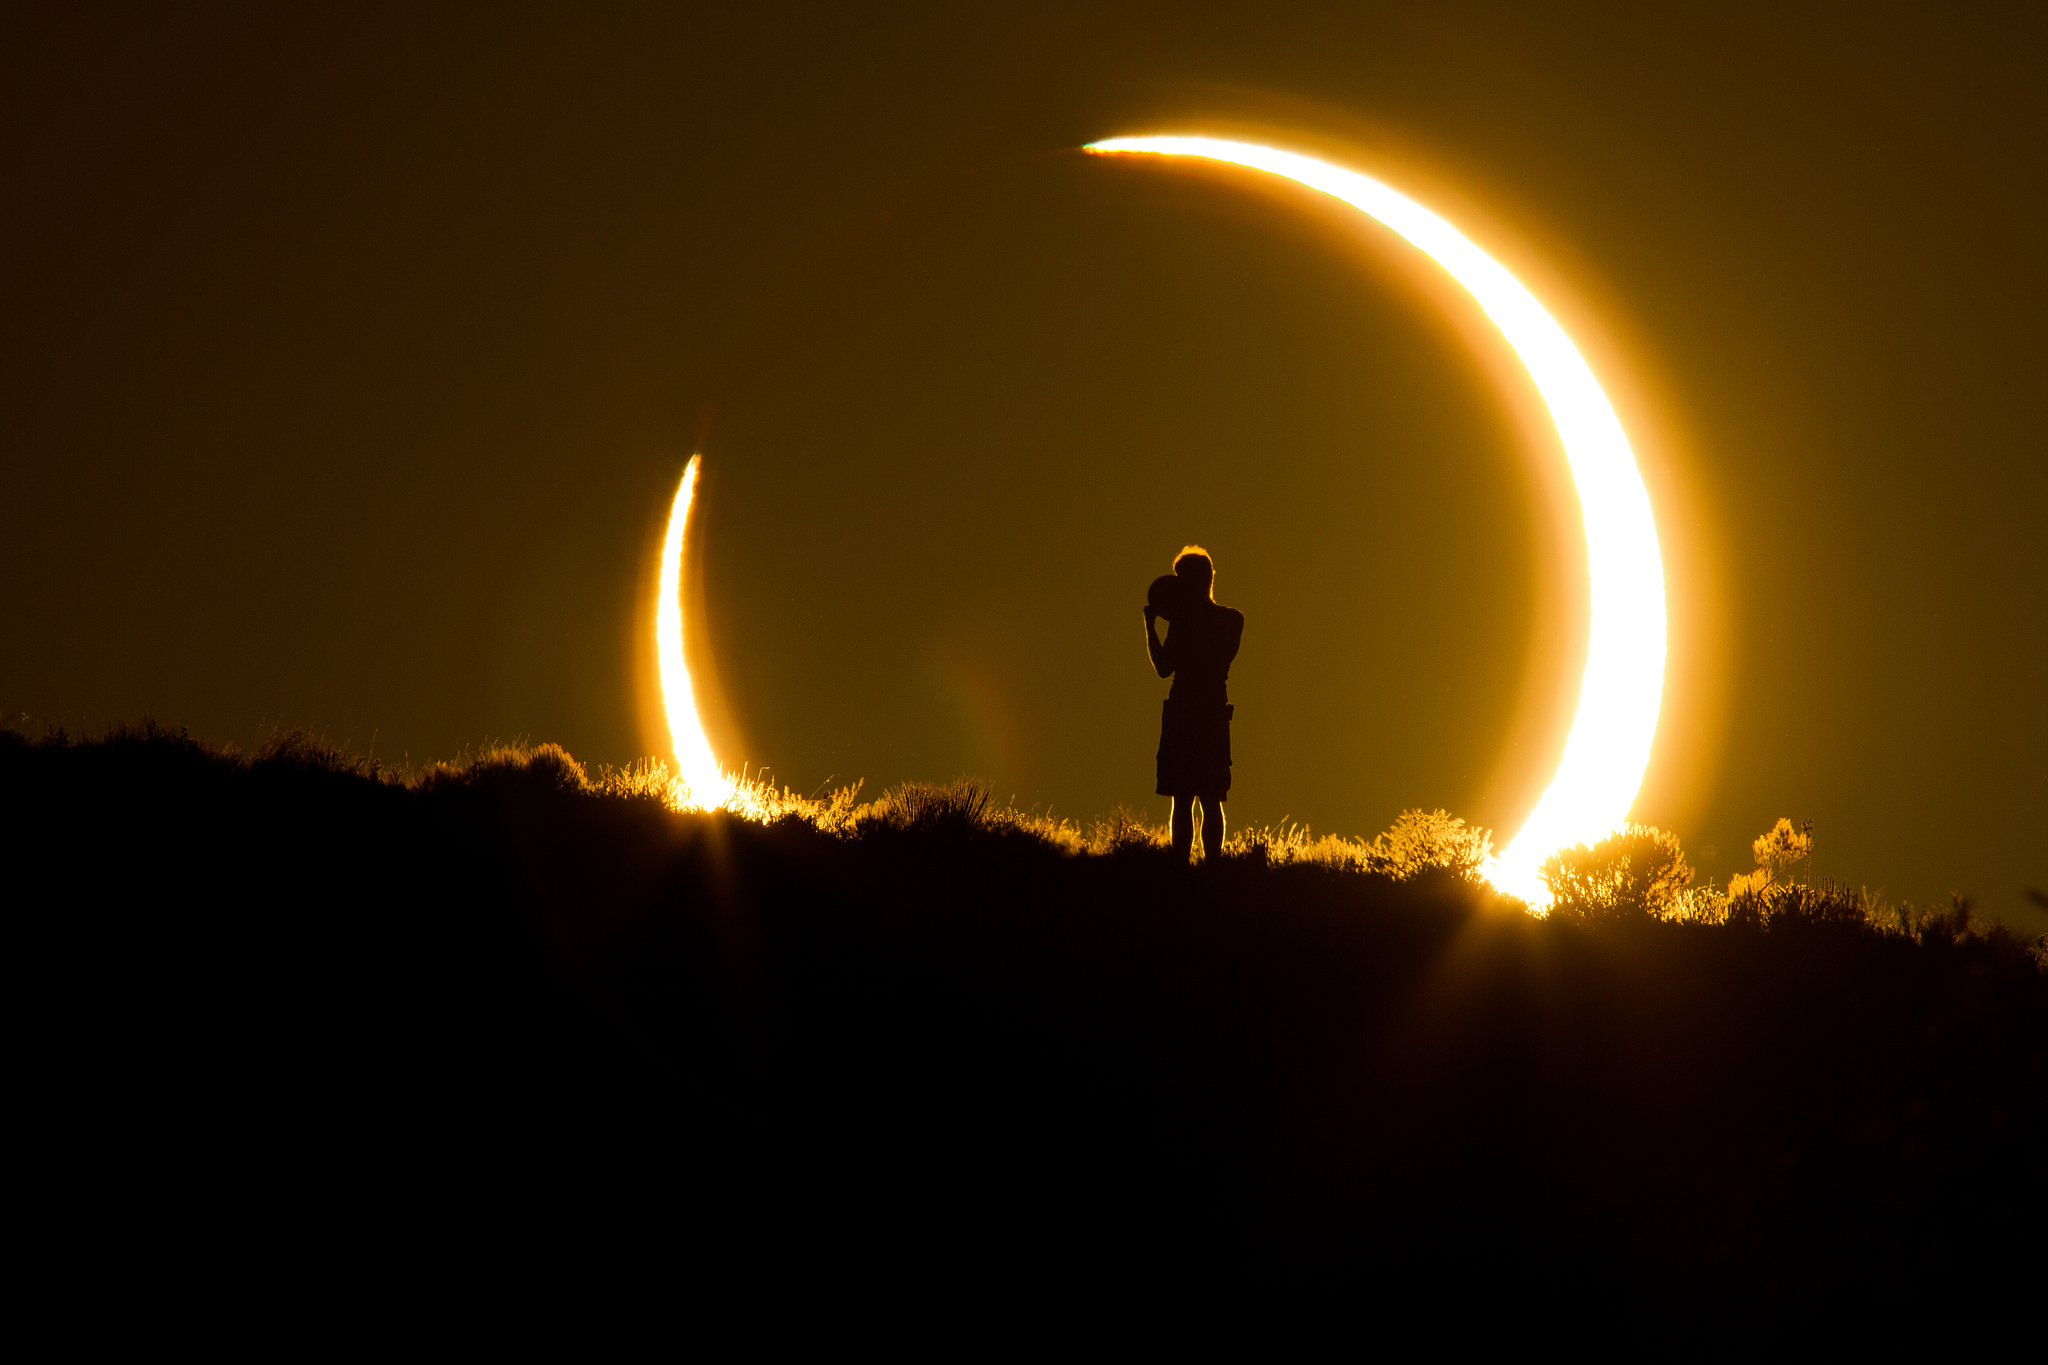 Fissare l'eclissi solare a occhi nudi può renderti cieco?